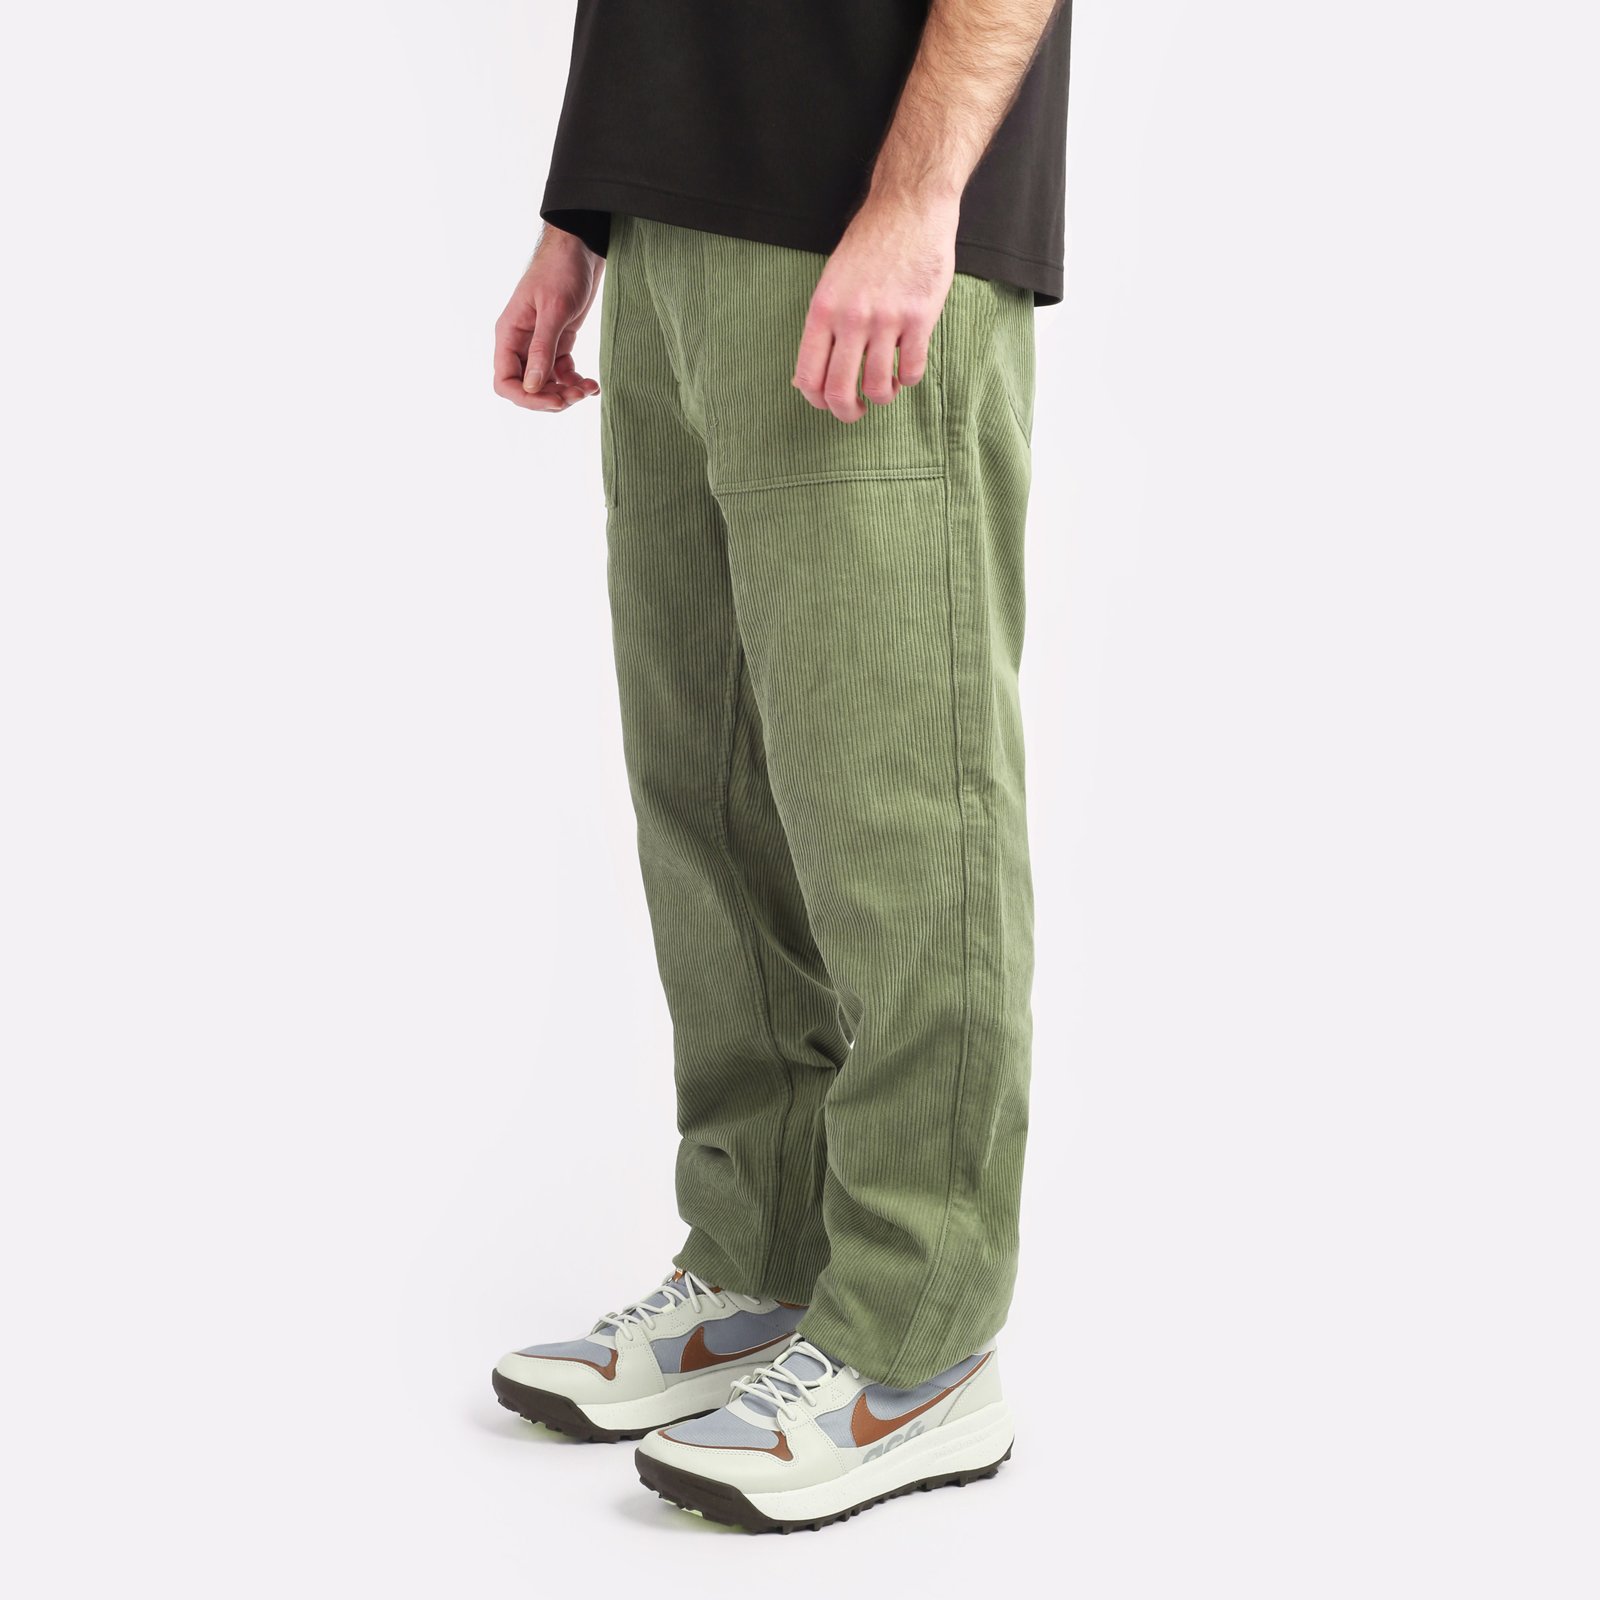 мужские брюки Alpha Industries Corduroy Fatigue Pant  (MBC53501CO-green)  - цена, описание, фото 3